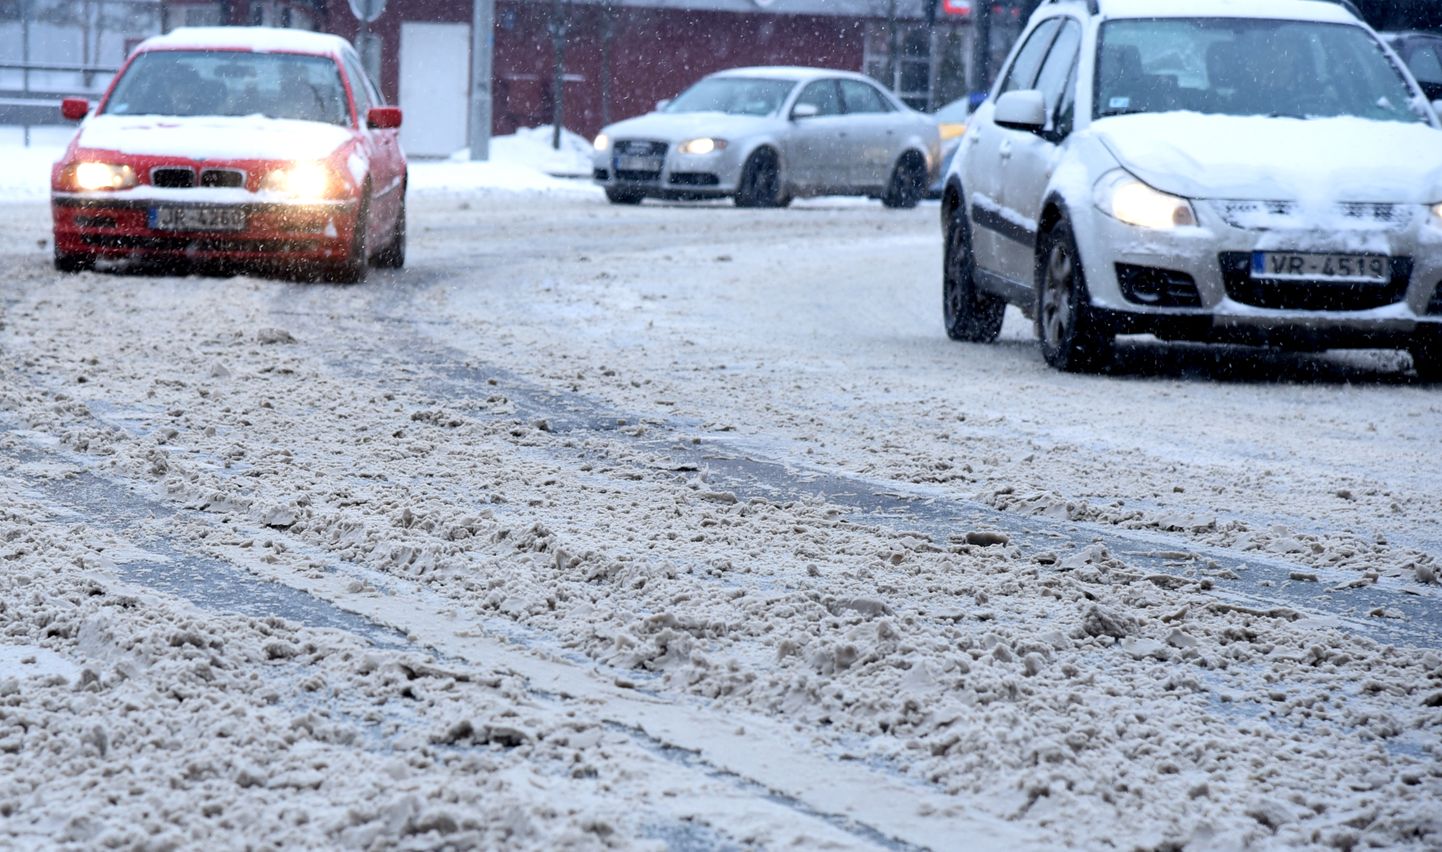 Satiksmes haoss sniegotajās Rīgas ielās